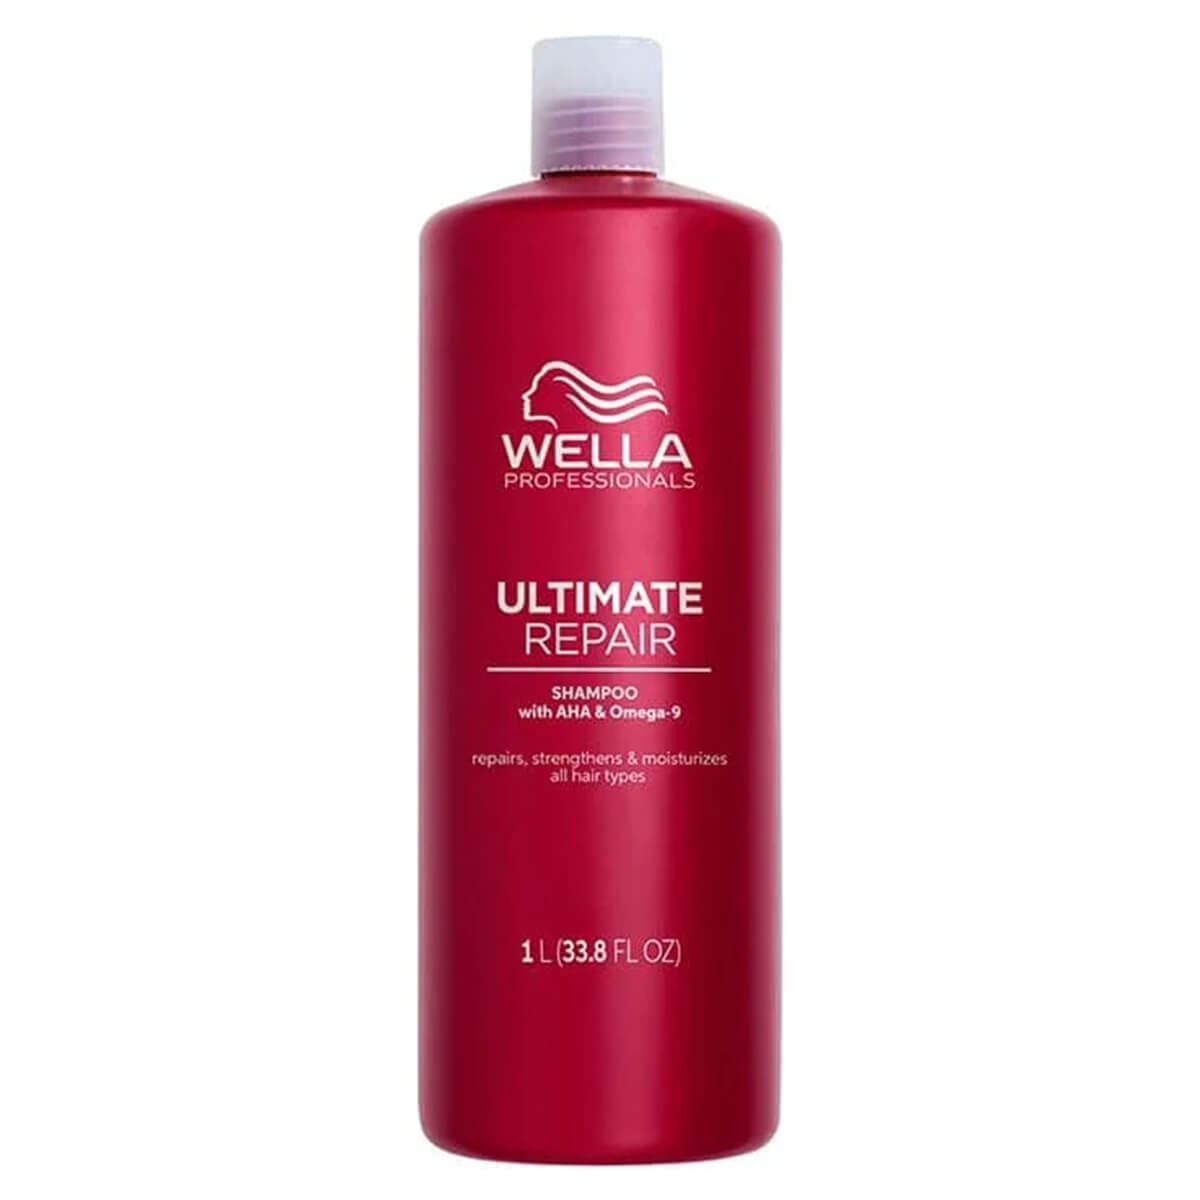 wella sp volumize szampon bardziej naturalny czy sztuczny skład